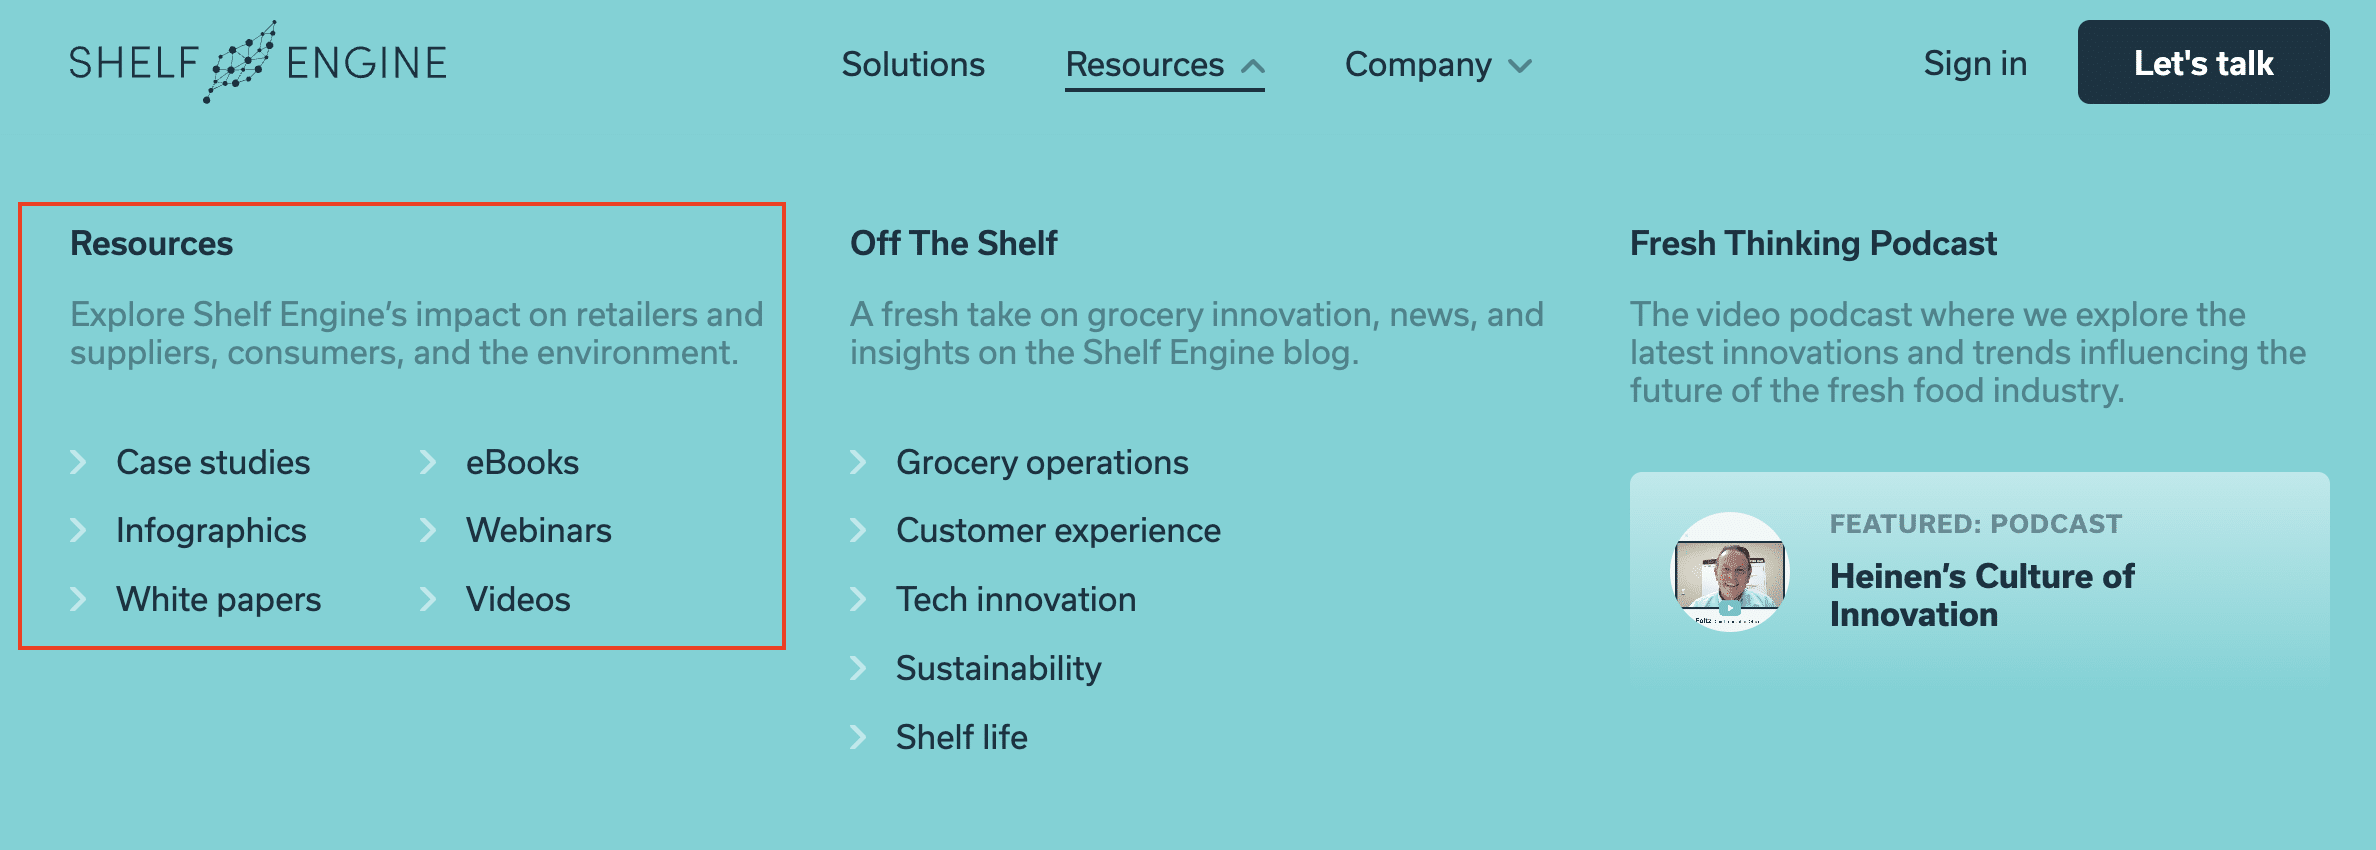 screenshot from shelf engine’s website shows their diverse portfolio of high quality content